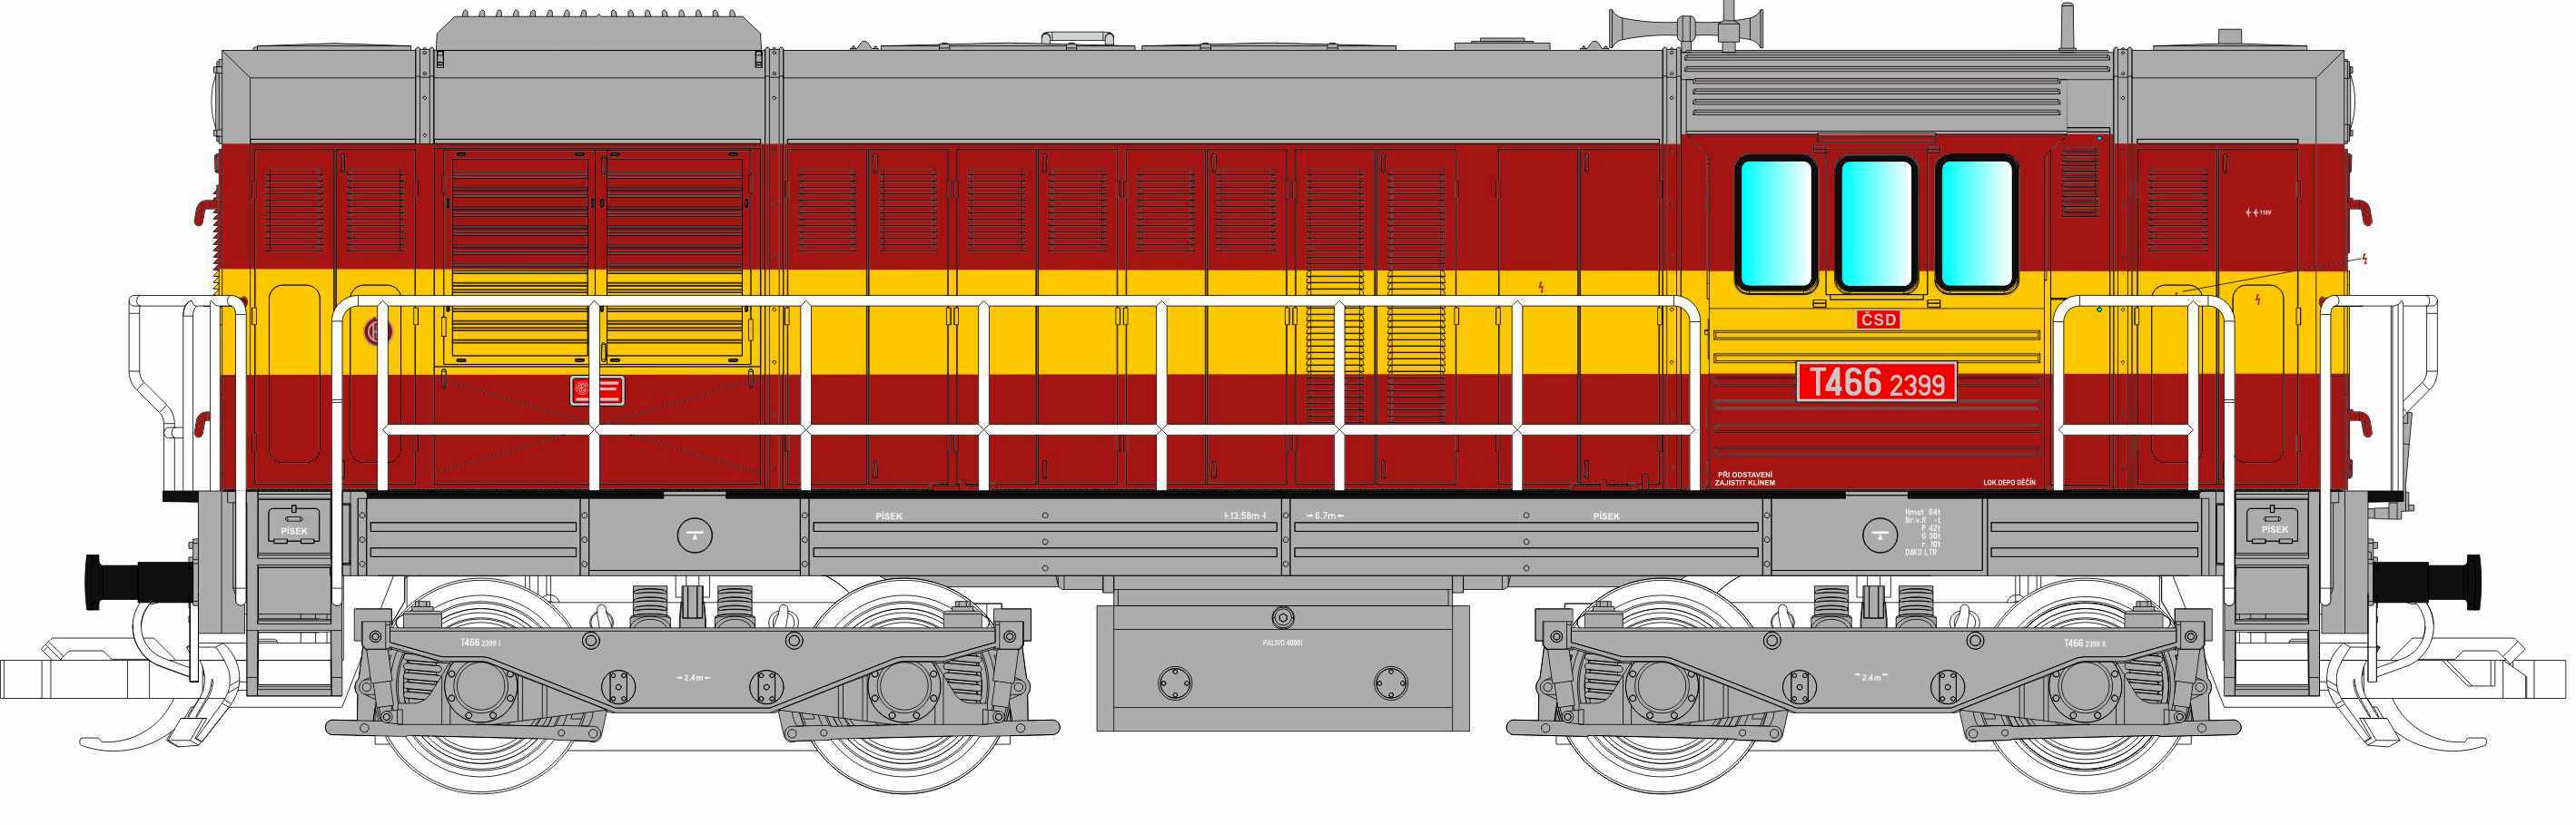 501578 Tillig TT Bahn Dieselová lokomotivaT466.2399 ČSD limitovaná edice (TT)